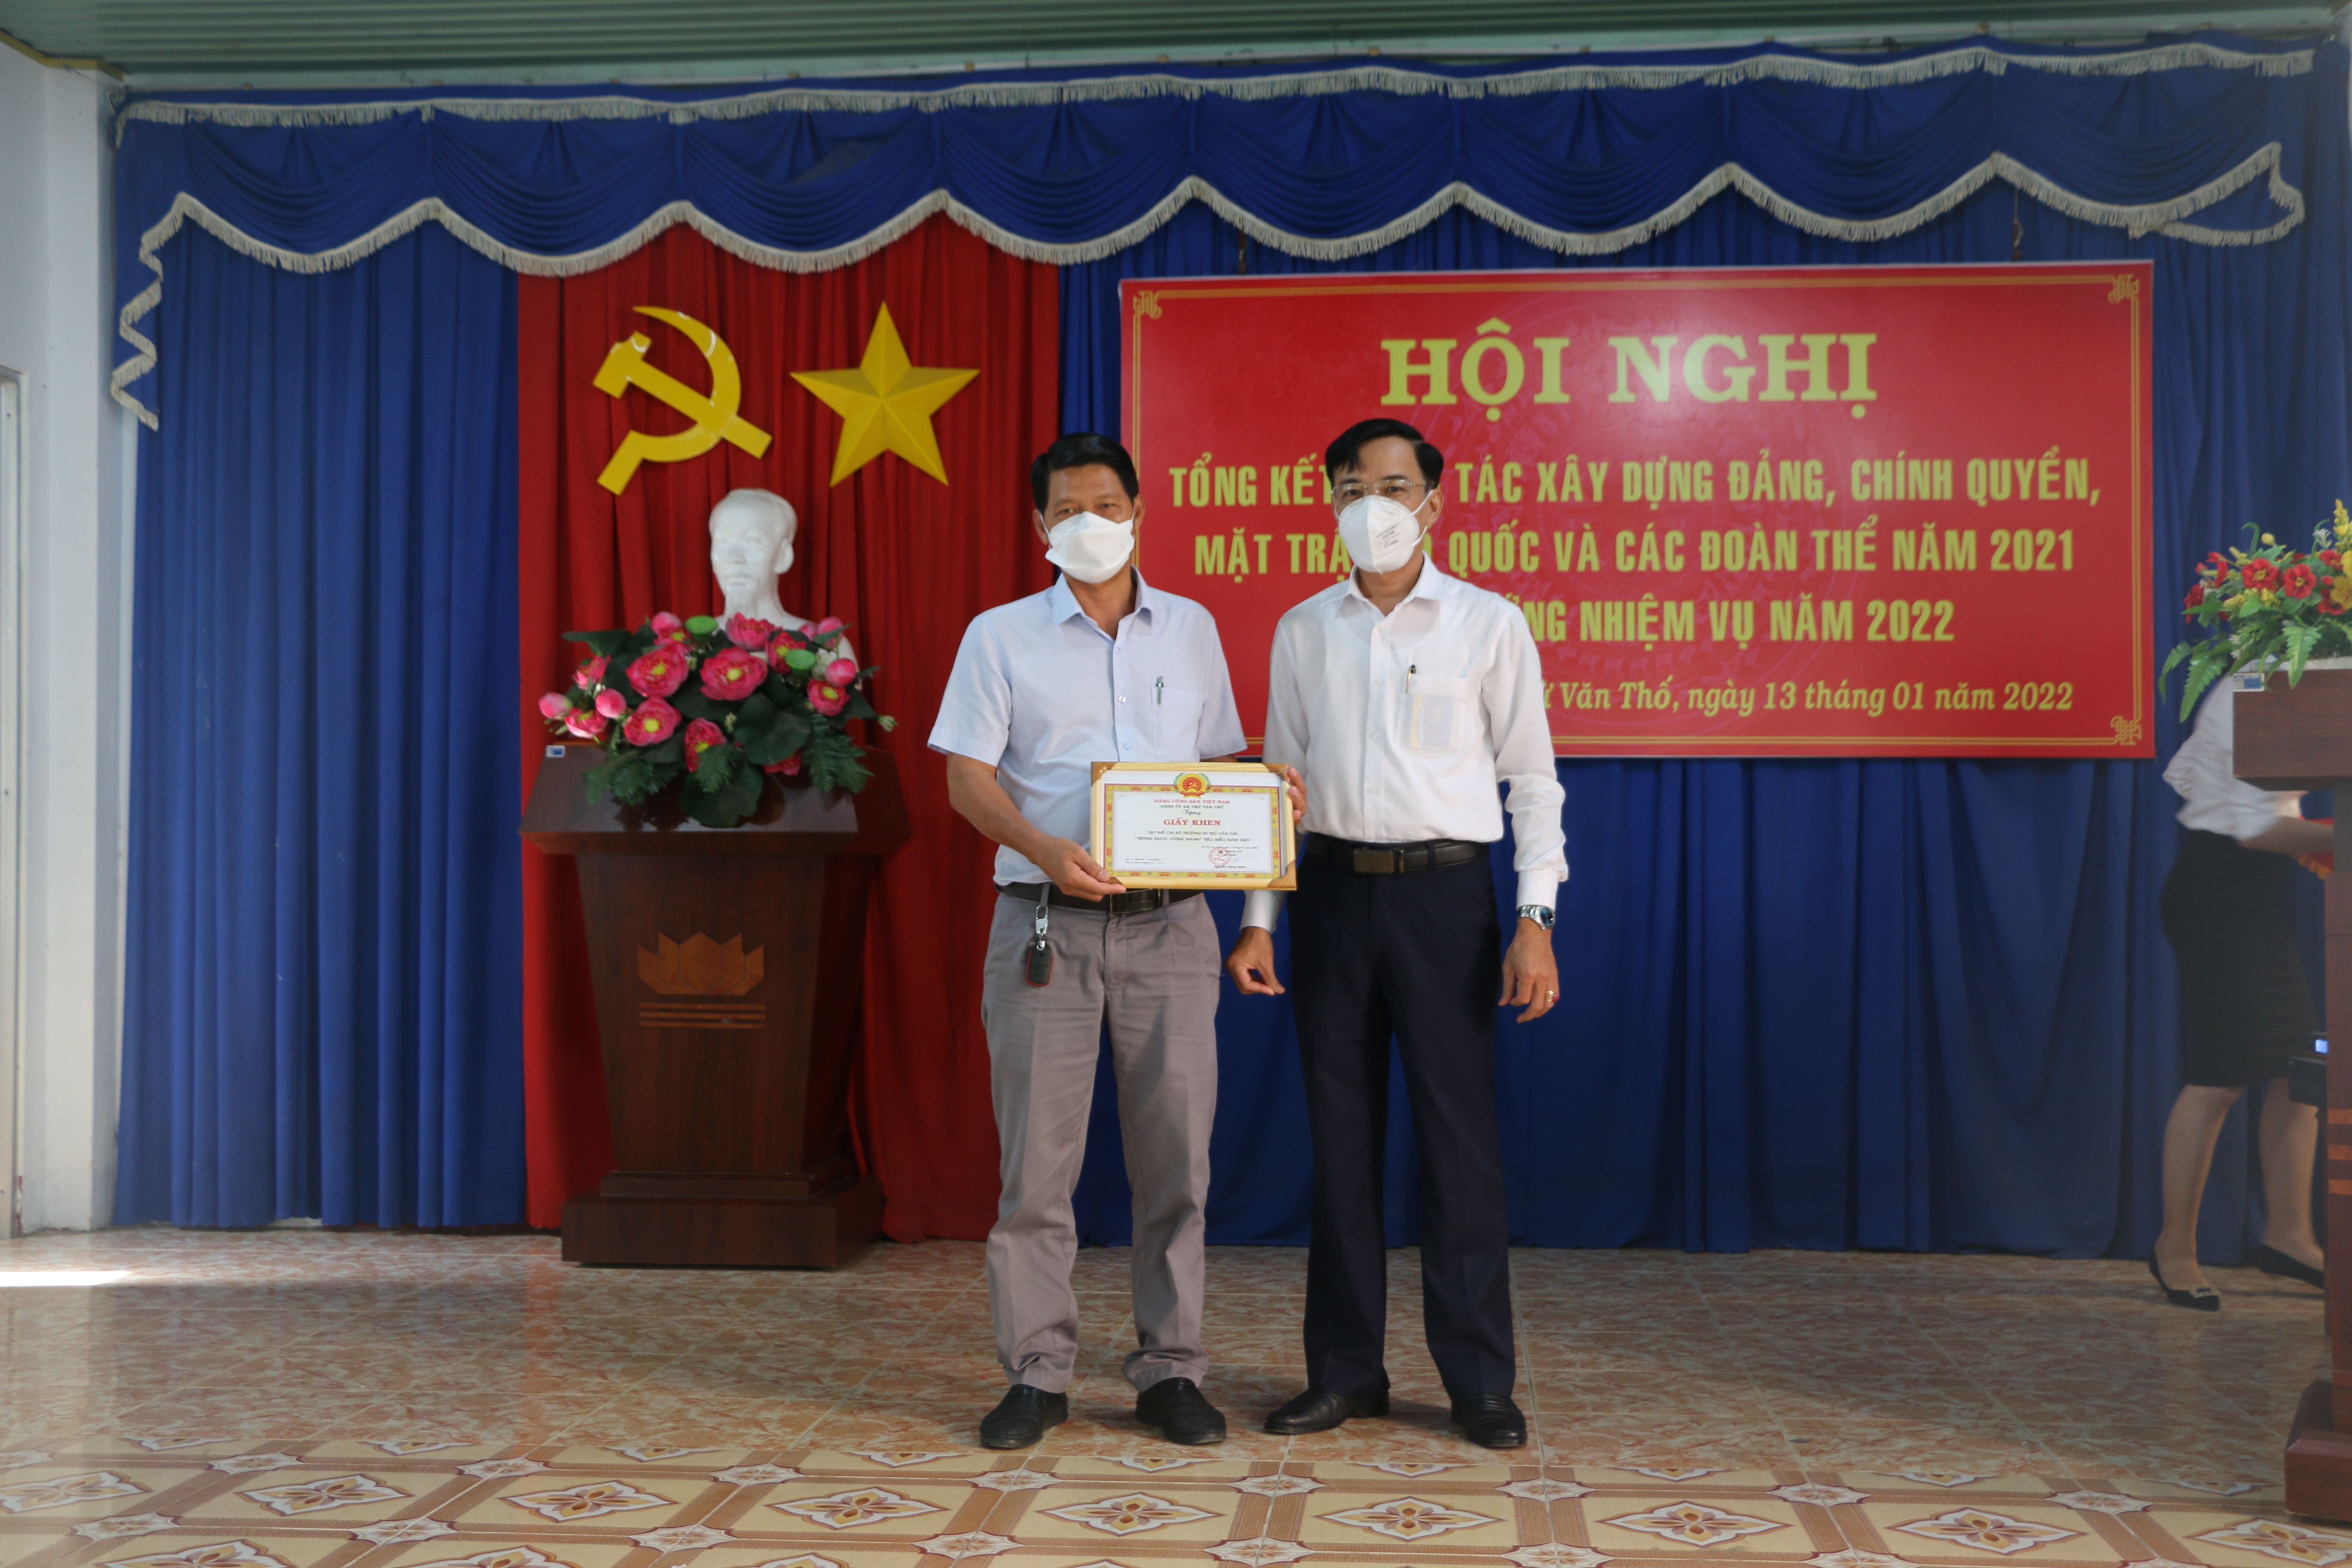 Ông Nguyễn Minh Hiếu – Bí thư Đảng ủy xã trao giấy khen cho đại diện chi bộ trường Tiểu học Trừ Văn Thố.